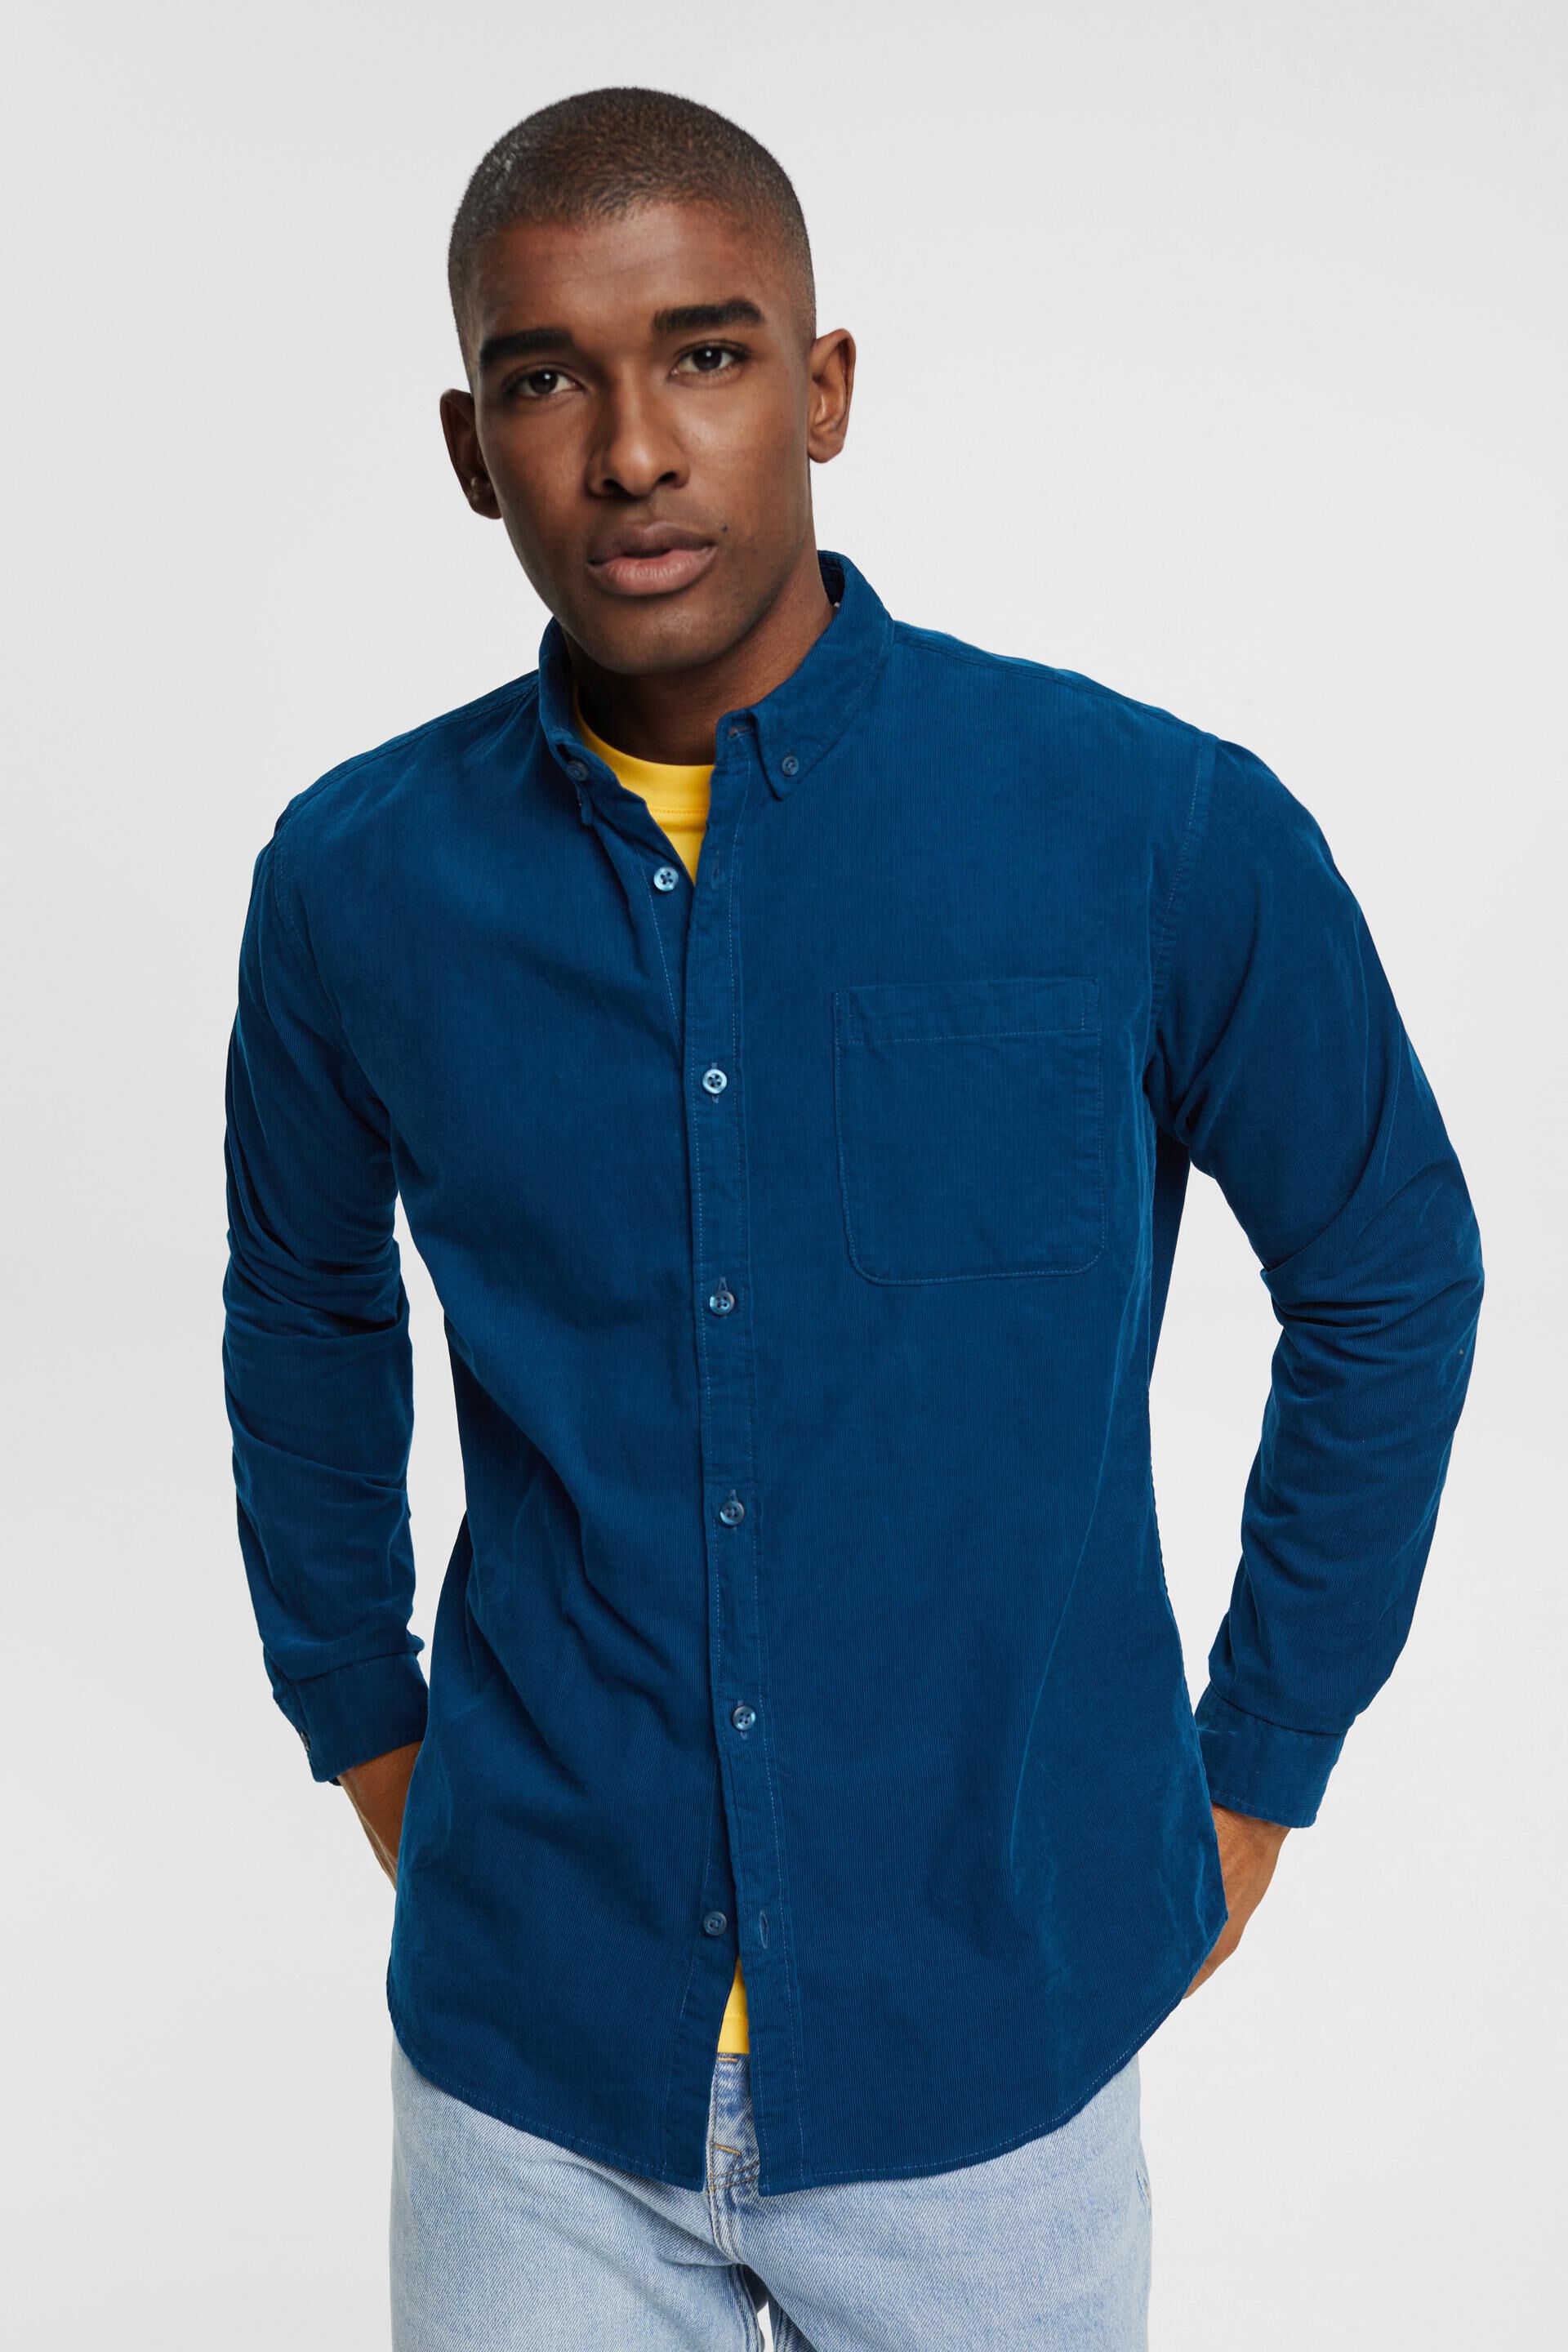 Esprit Vrijetijdshemd Slim Fit 103ee2f006 in het Blauw voor heren Heren Kleding voor voor Overhemden voor Casual en nette overhemden 